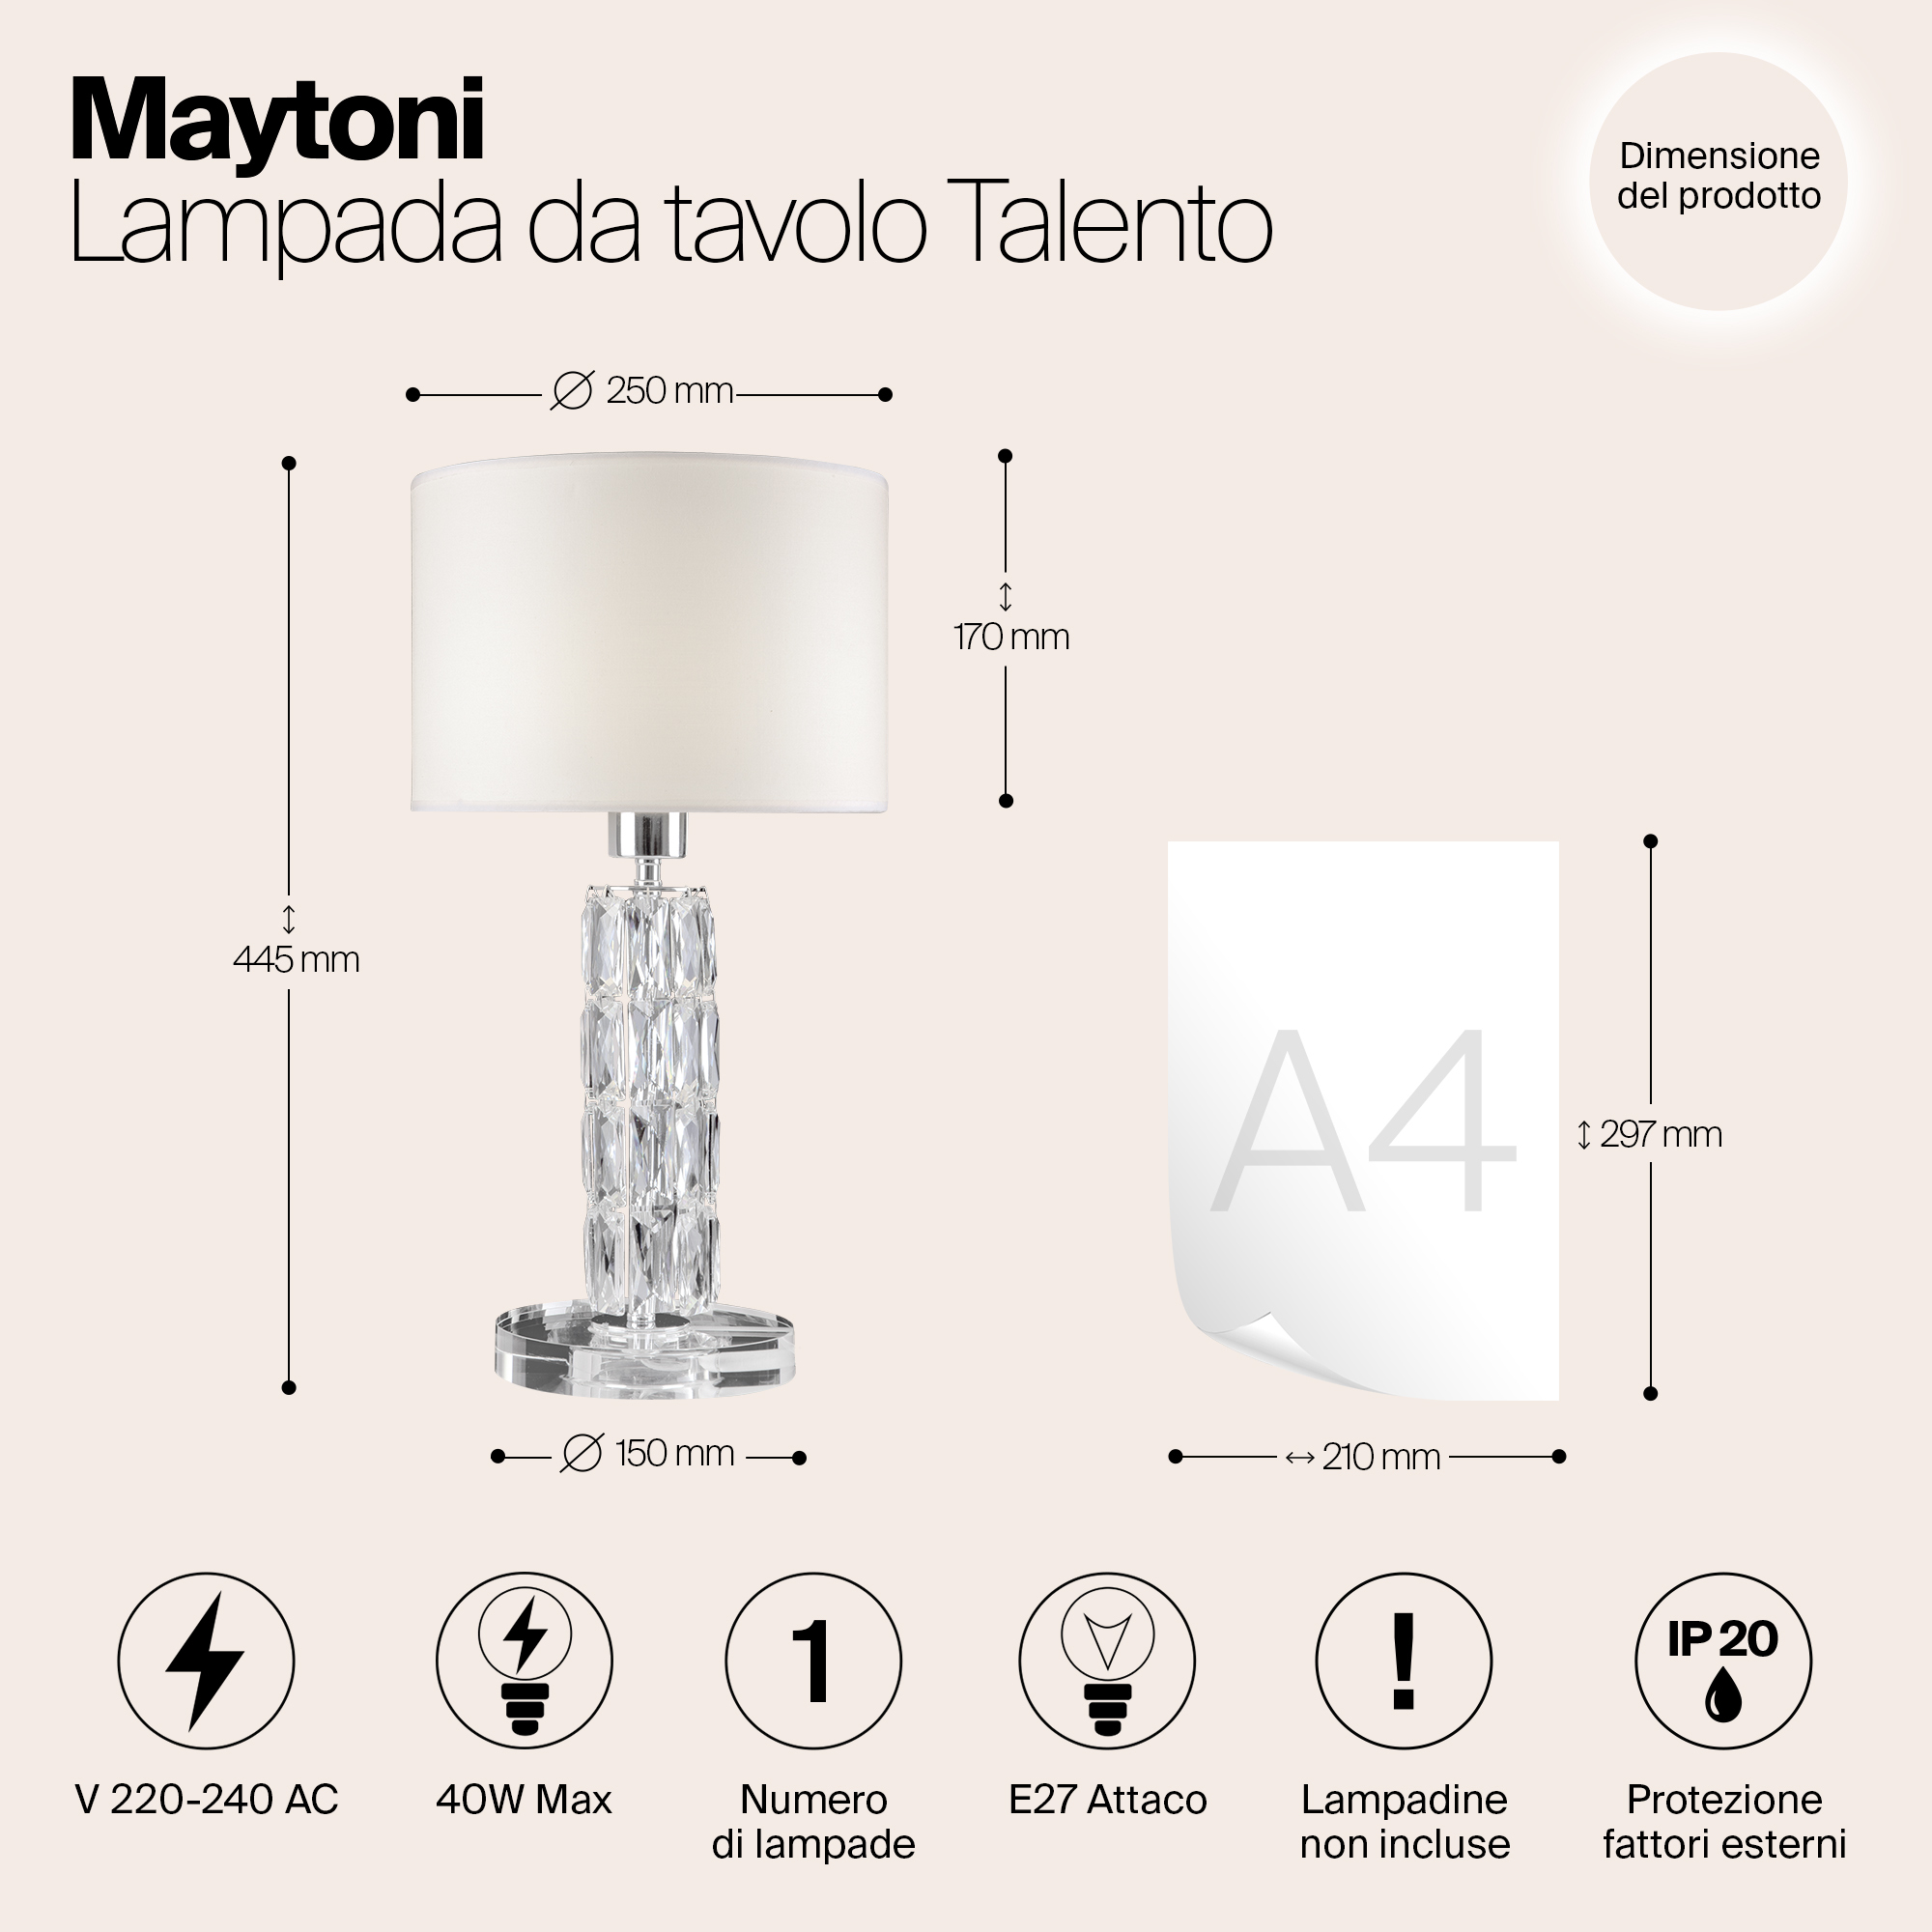 Настольный светильник Maytoni DIA008TL-01CH